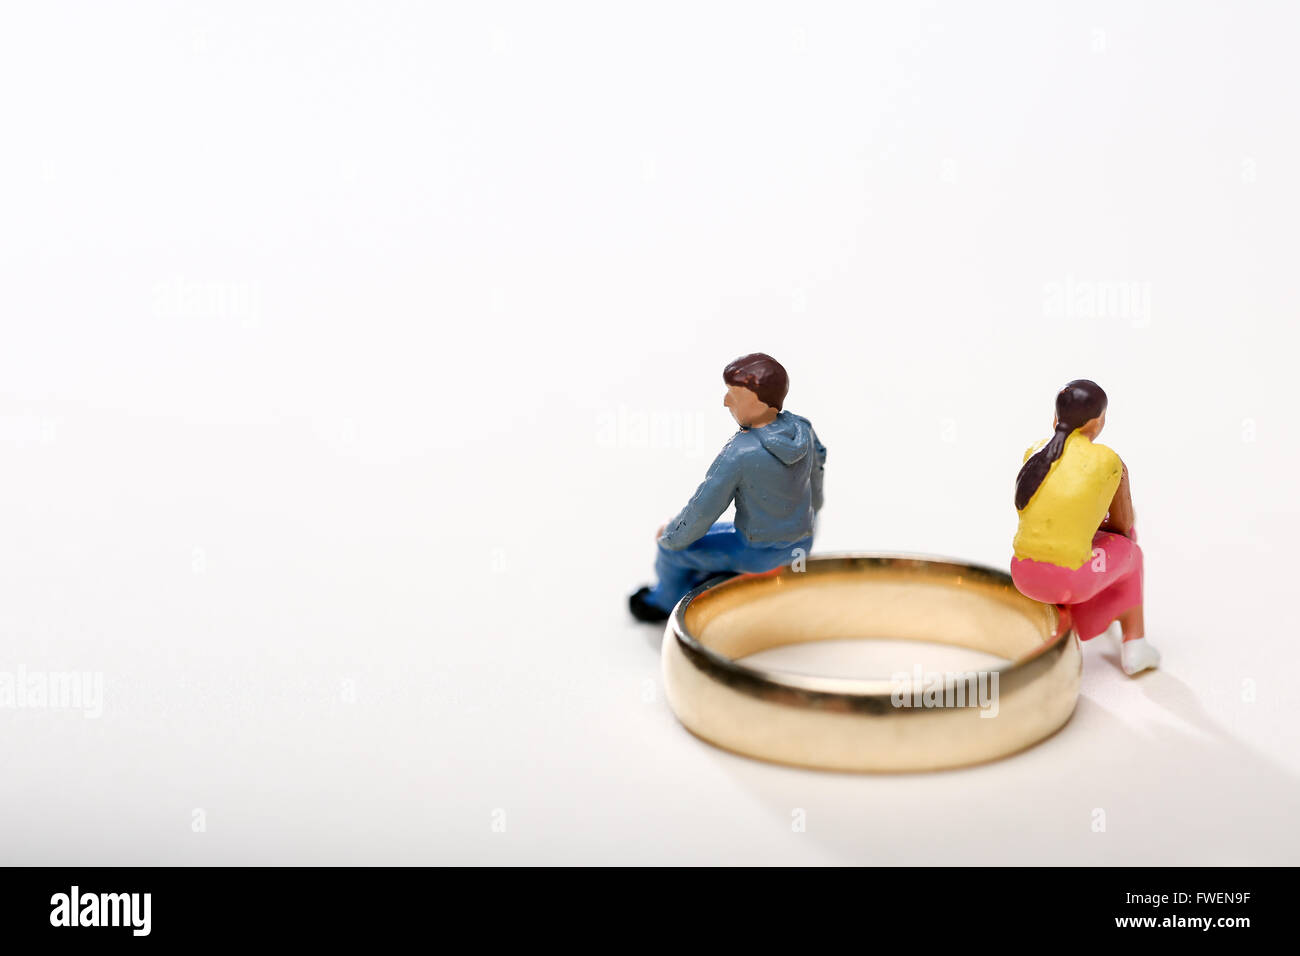 Konzept-Bild von ein paar saß auf Trauringe um Scheidung und Trennung zu illustrieren Stockfoto